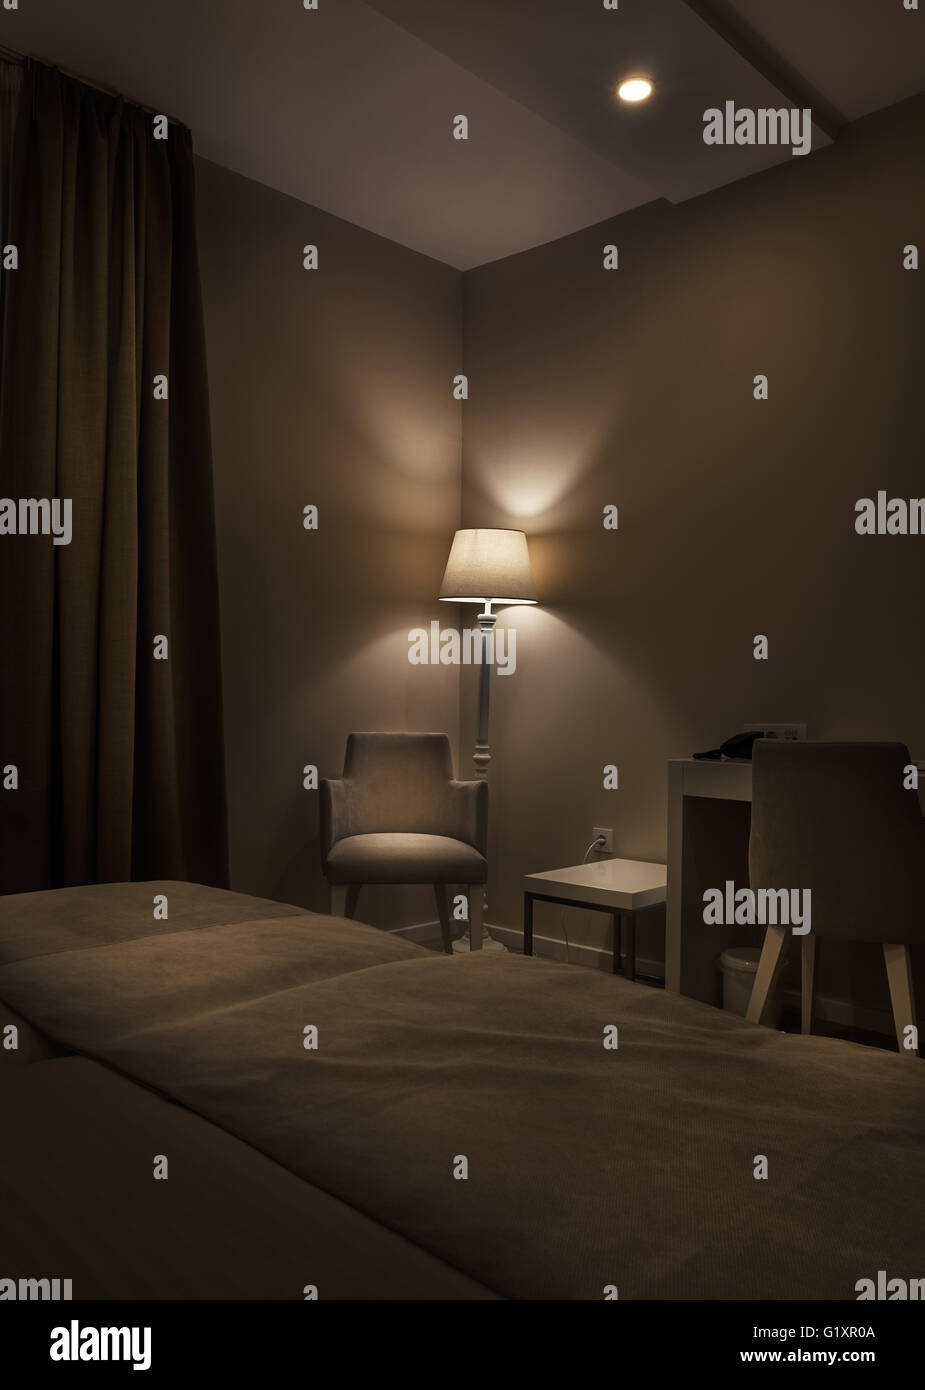 Détails d'une chambre d'hôtel, retro lampe et fauteuil, grand brun sombre, rideaux ambiance calme pendant la nuit. Banque D'Images